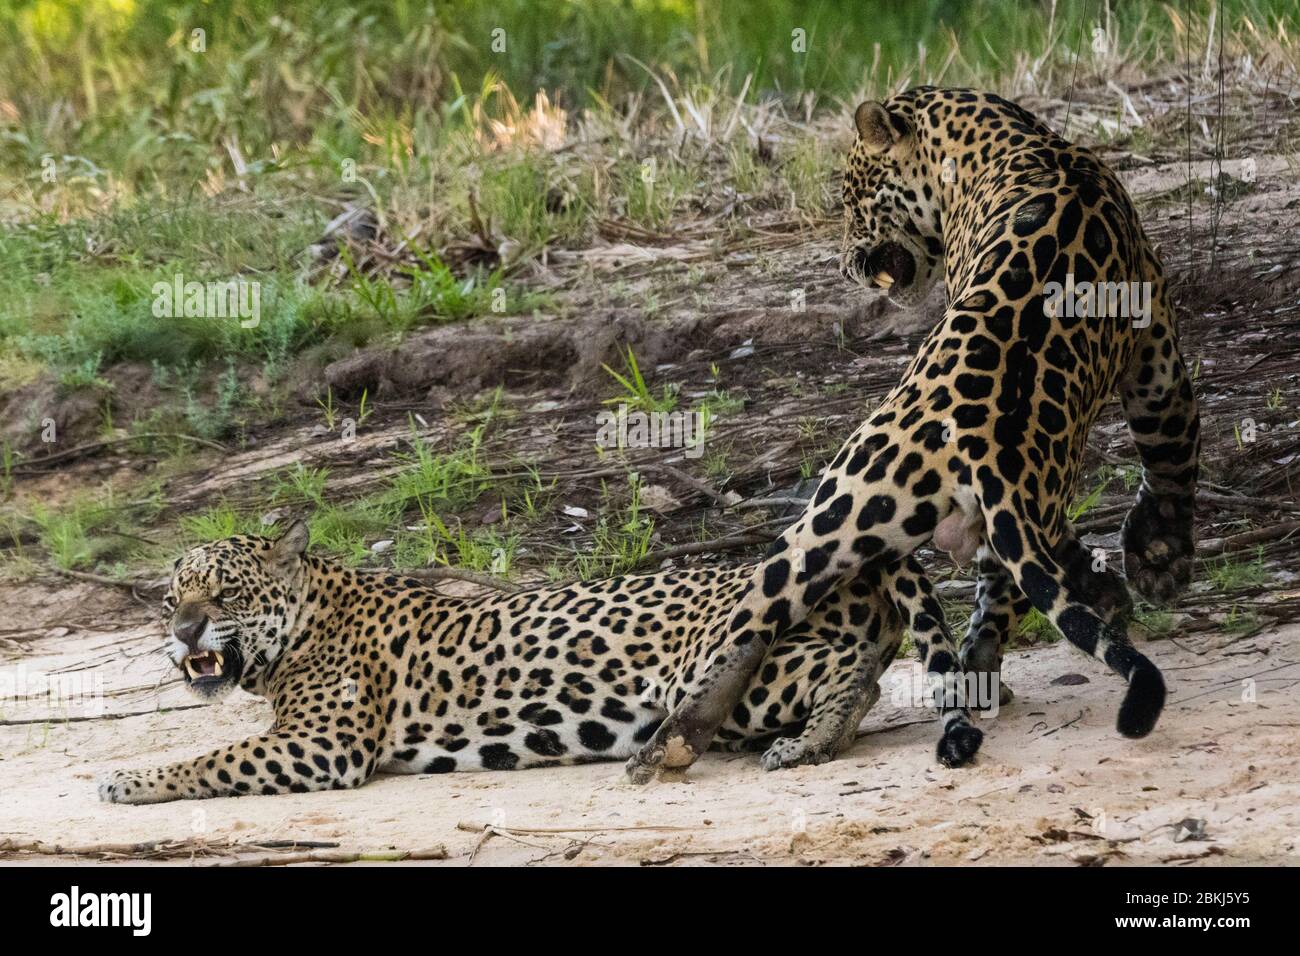 Jaguars (Panthera onca) mating, Pantanal, Mato Grosso, Brazil Stock Photo